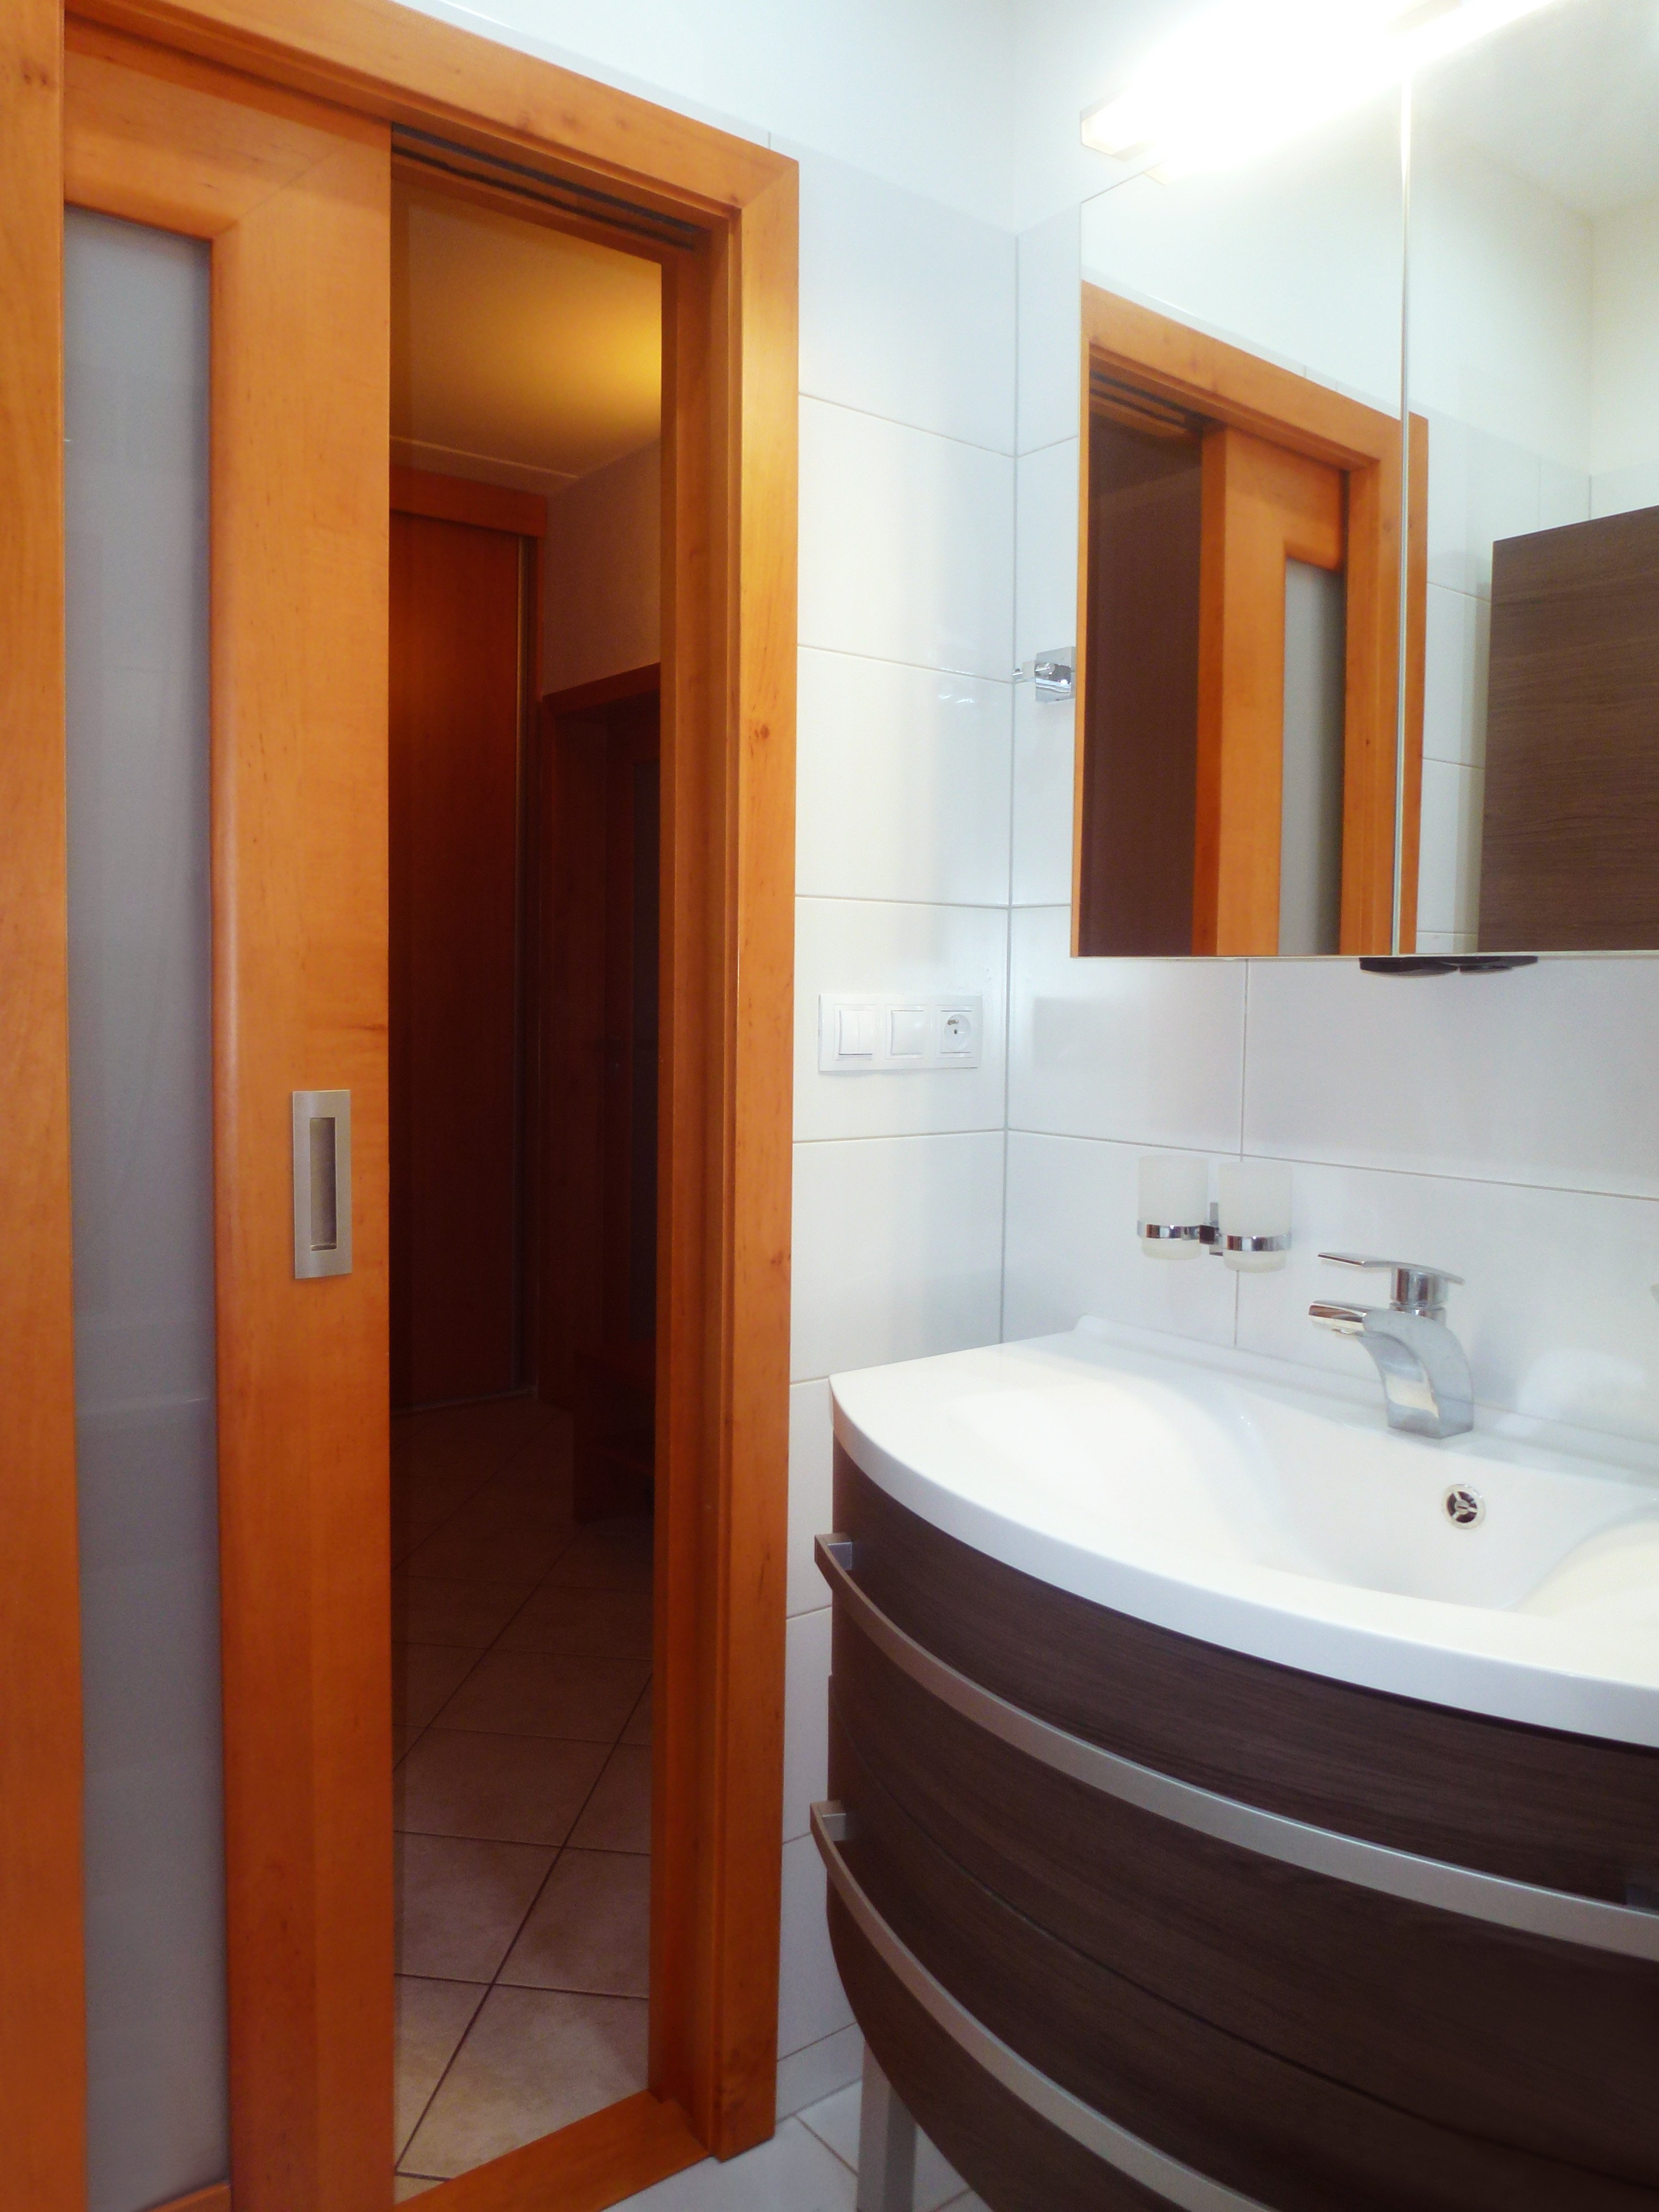 A04 Rekonstrukce malé panelákové koupelny, Svitavy